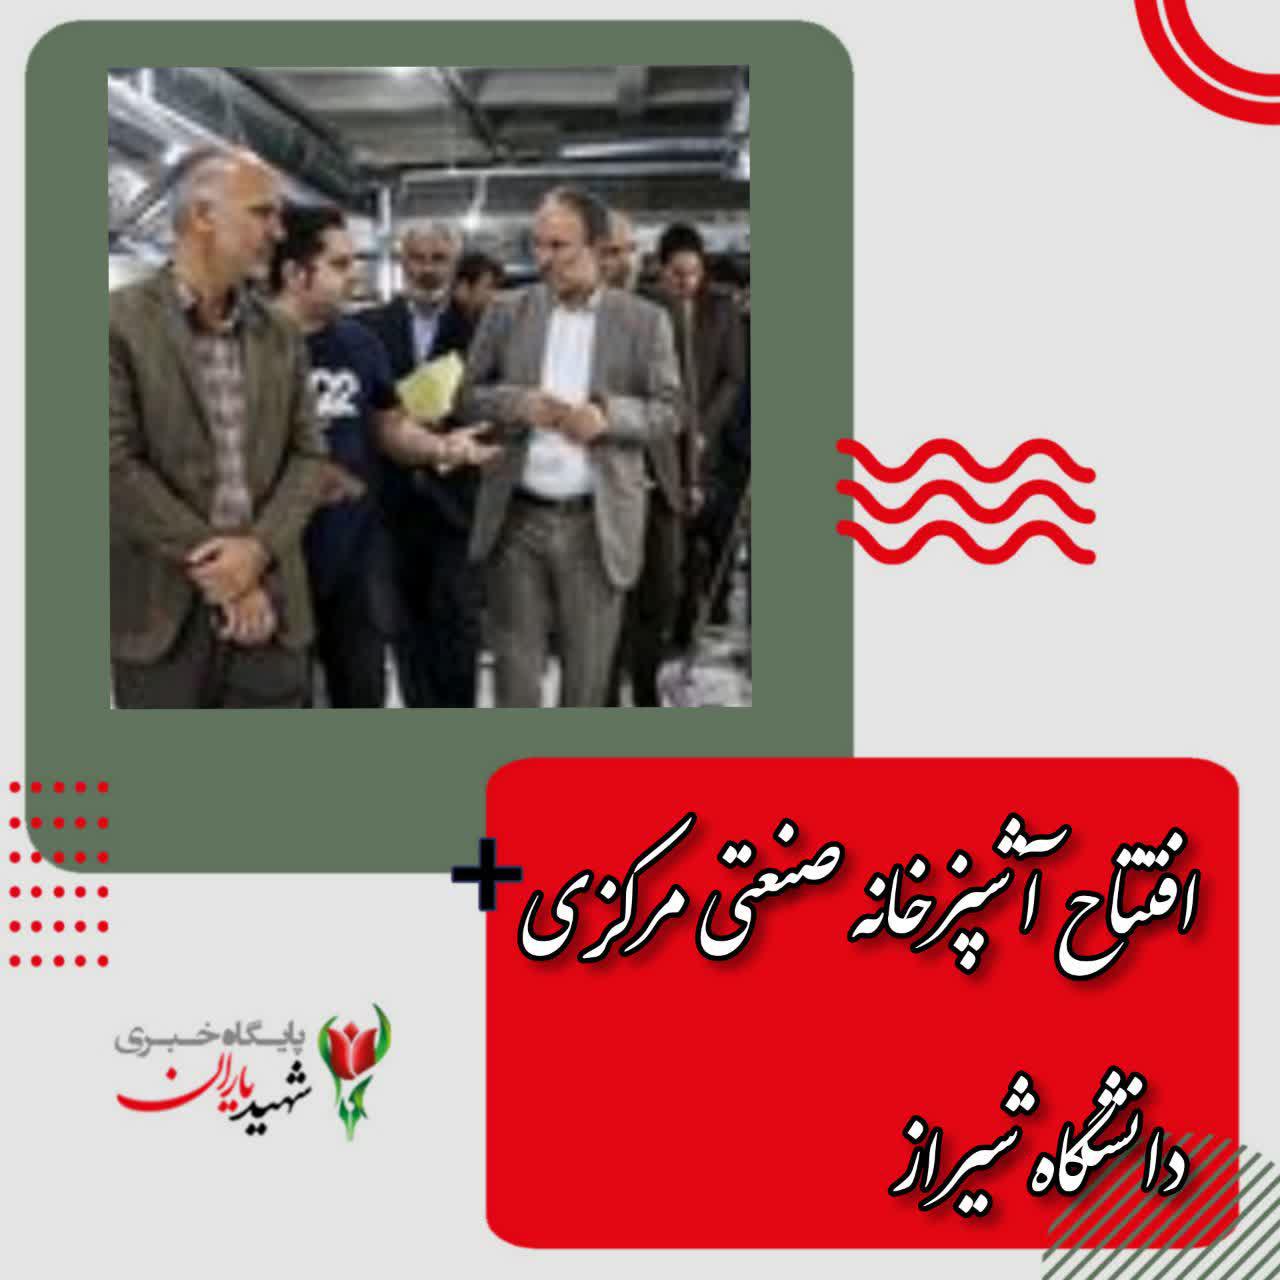 افتتاح آشپزخانه صنعتی مرکزی دانشگاه شیراز